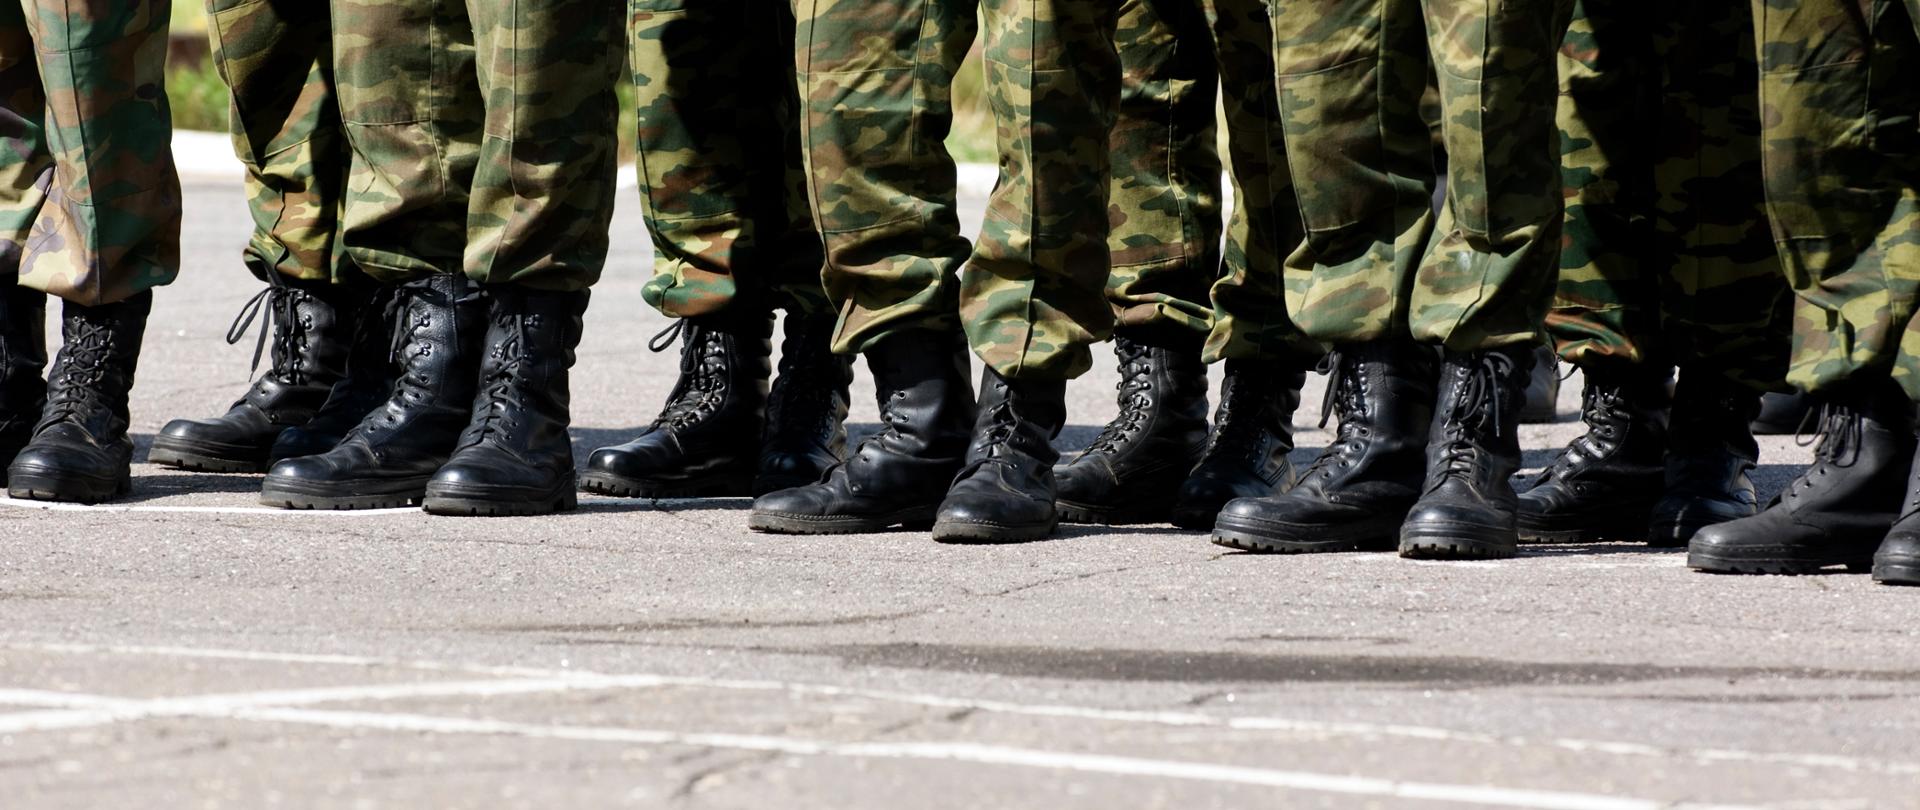 Buty żołnierzy, którzy stoją obok siebie